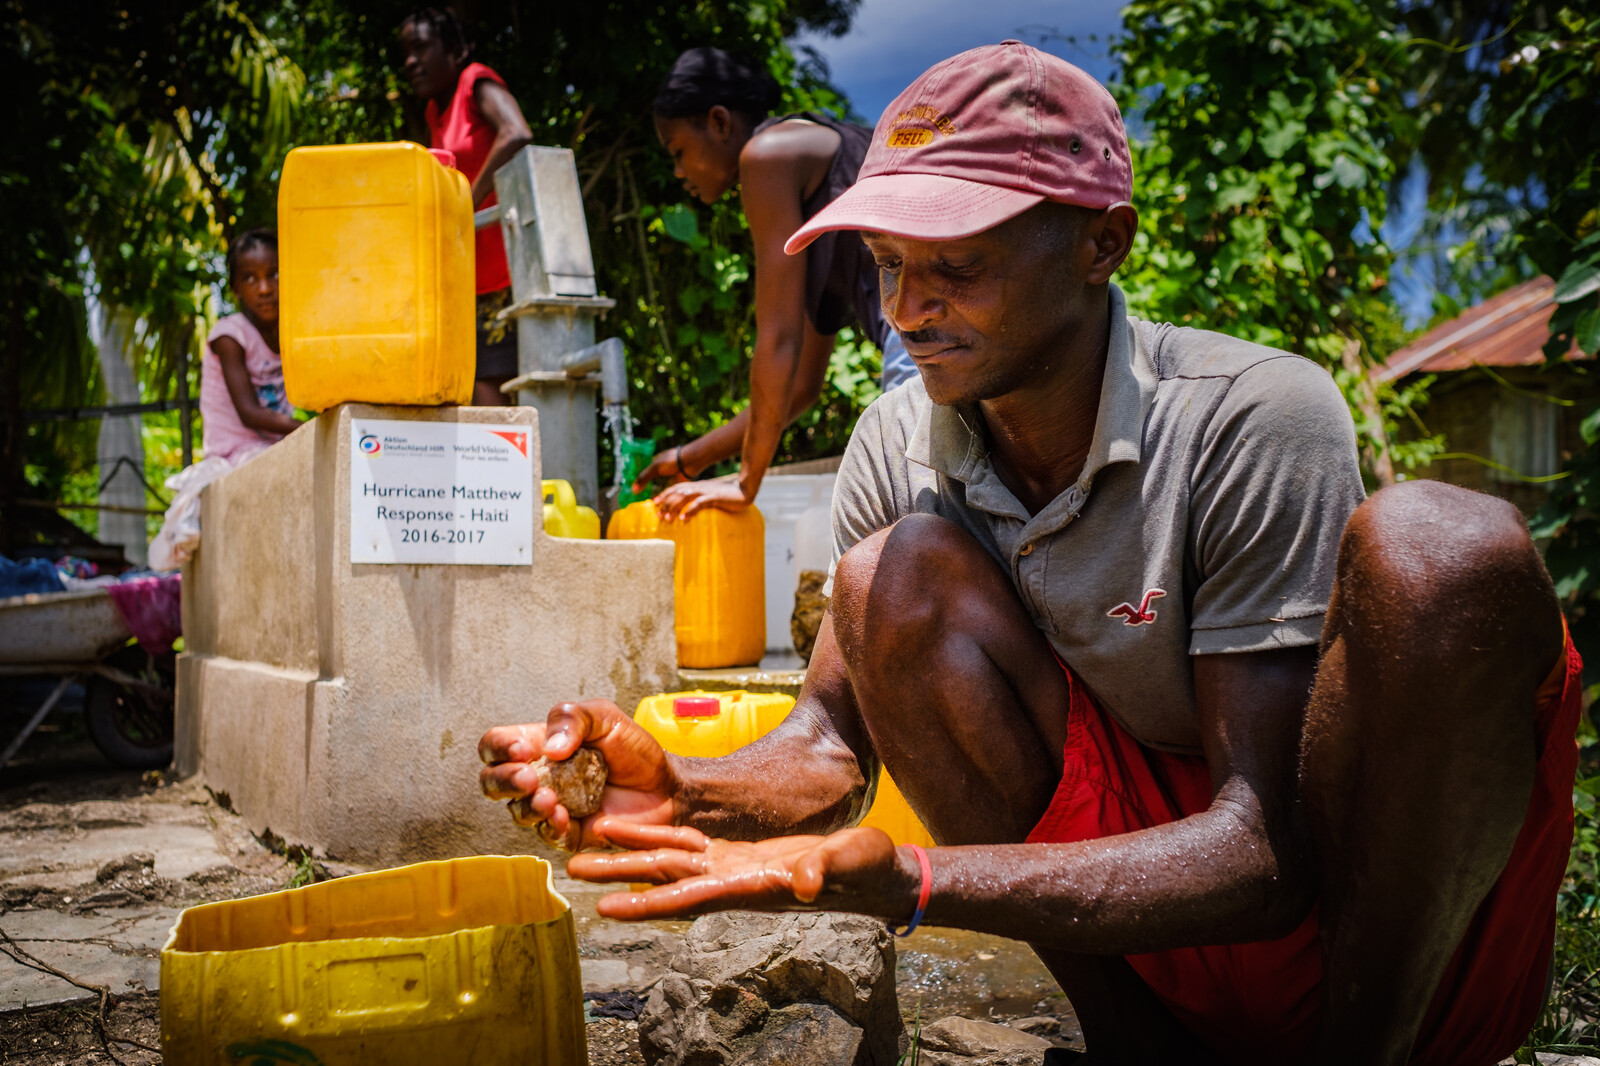 Filteranlagen, wie hier in Haiti, säubern das Wasser und helfen, Krankheiten vorzubeugen